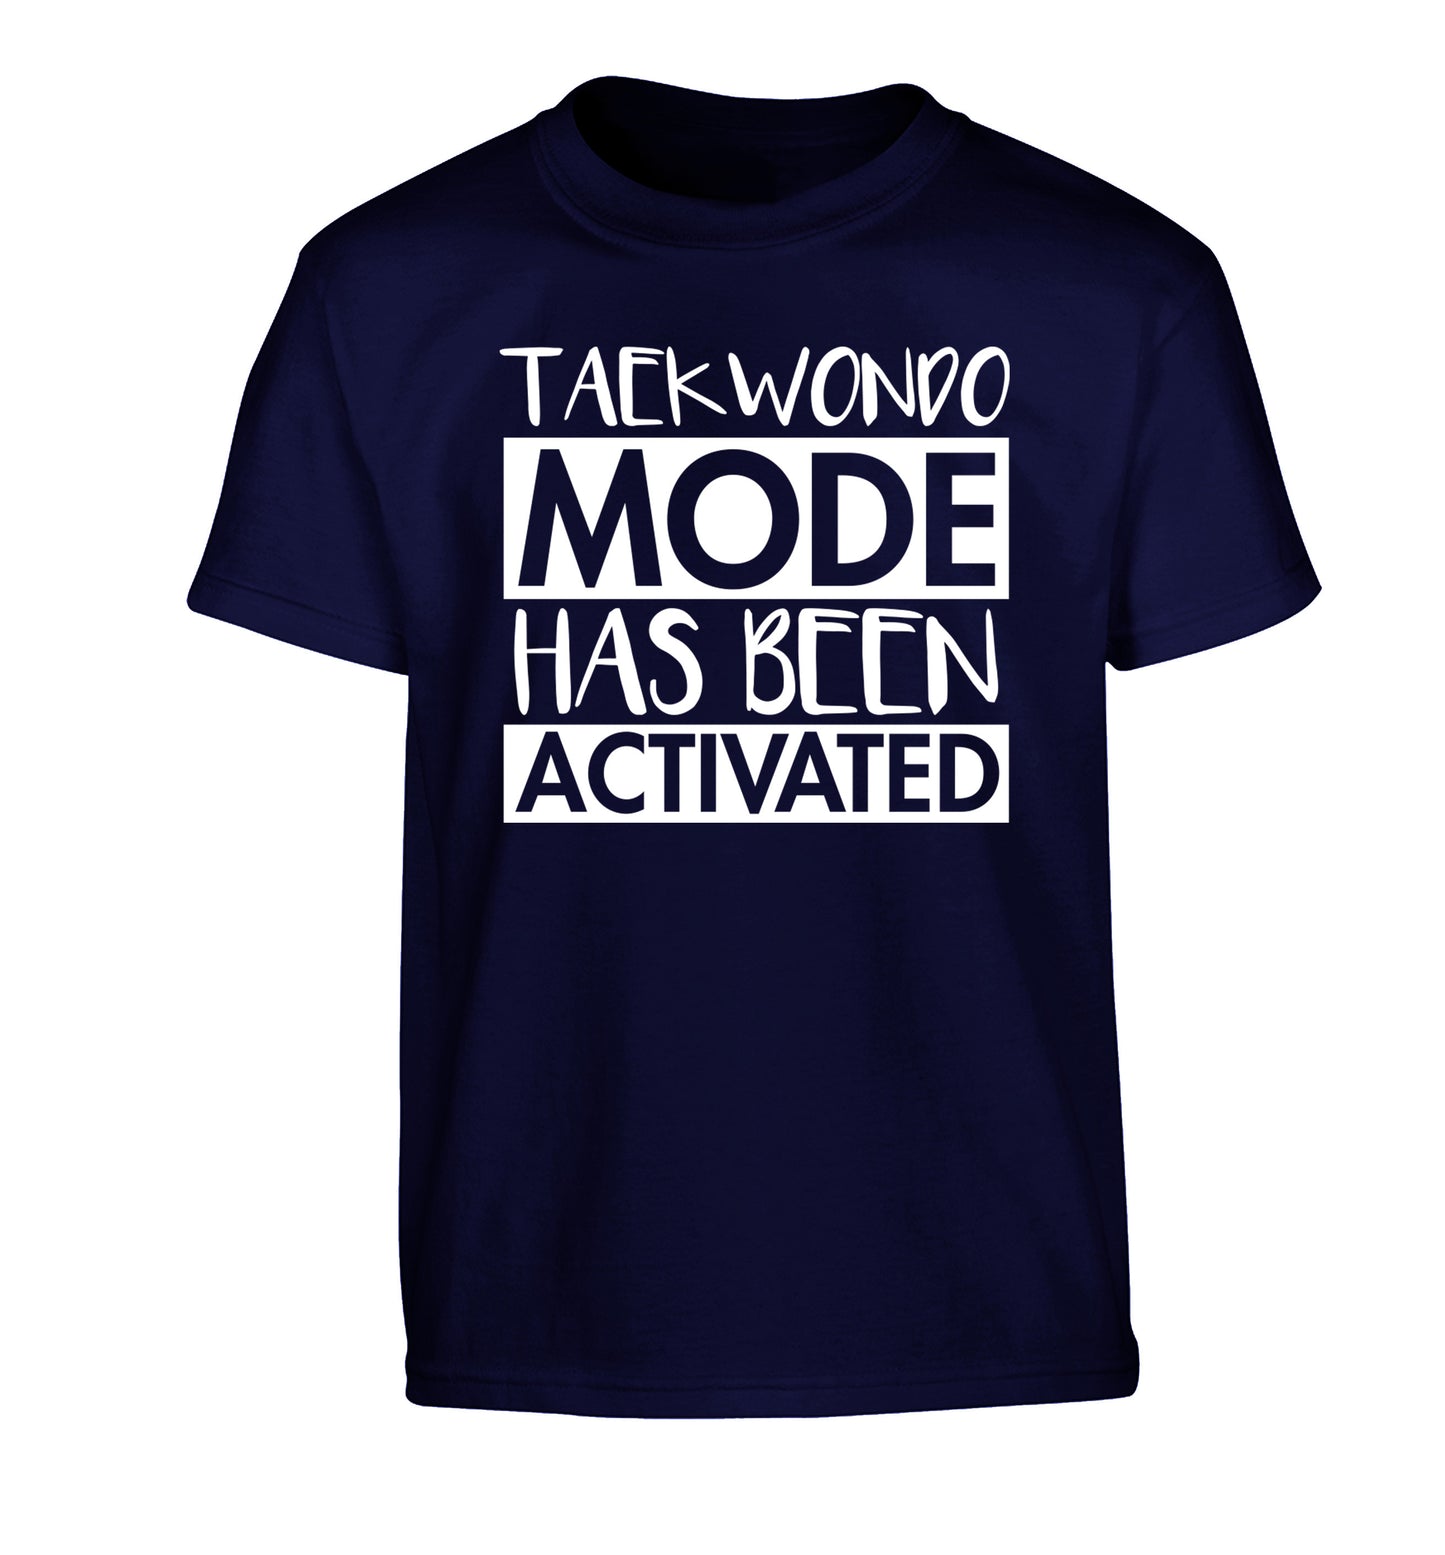 Taekwondo mode activated Children's navy Tshirt 12-14 Years